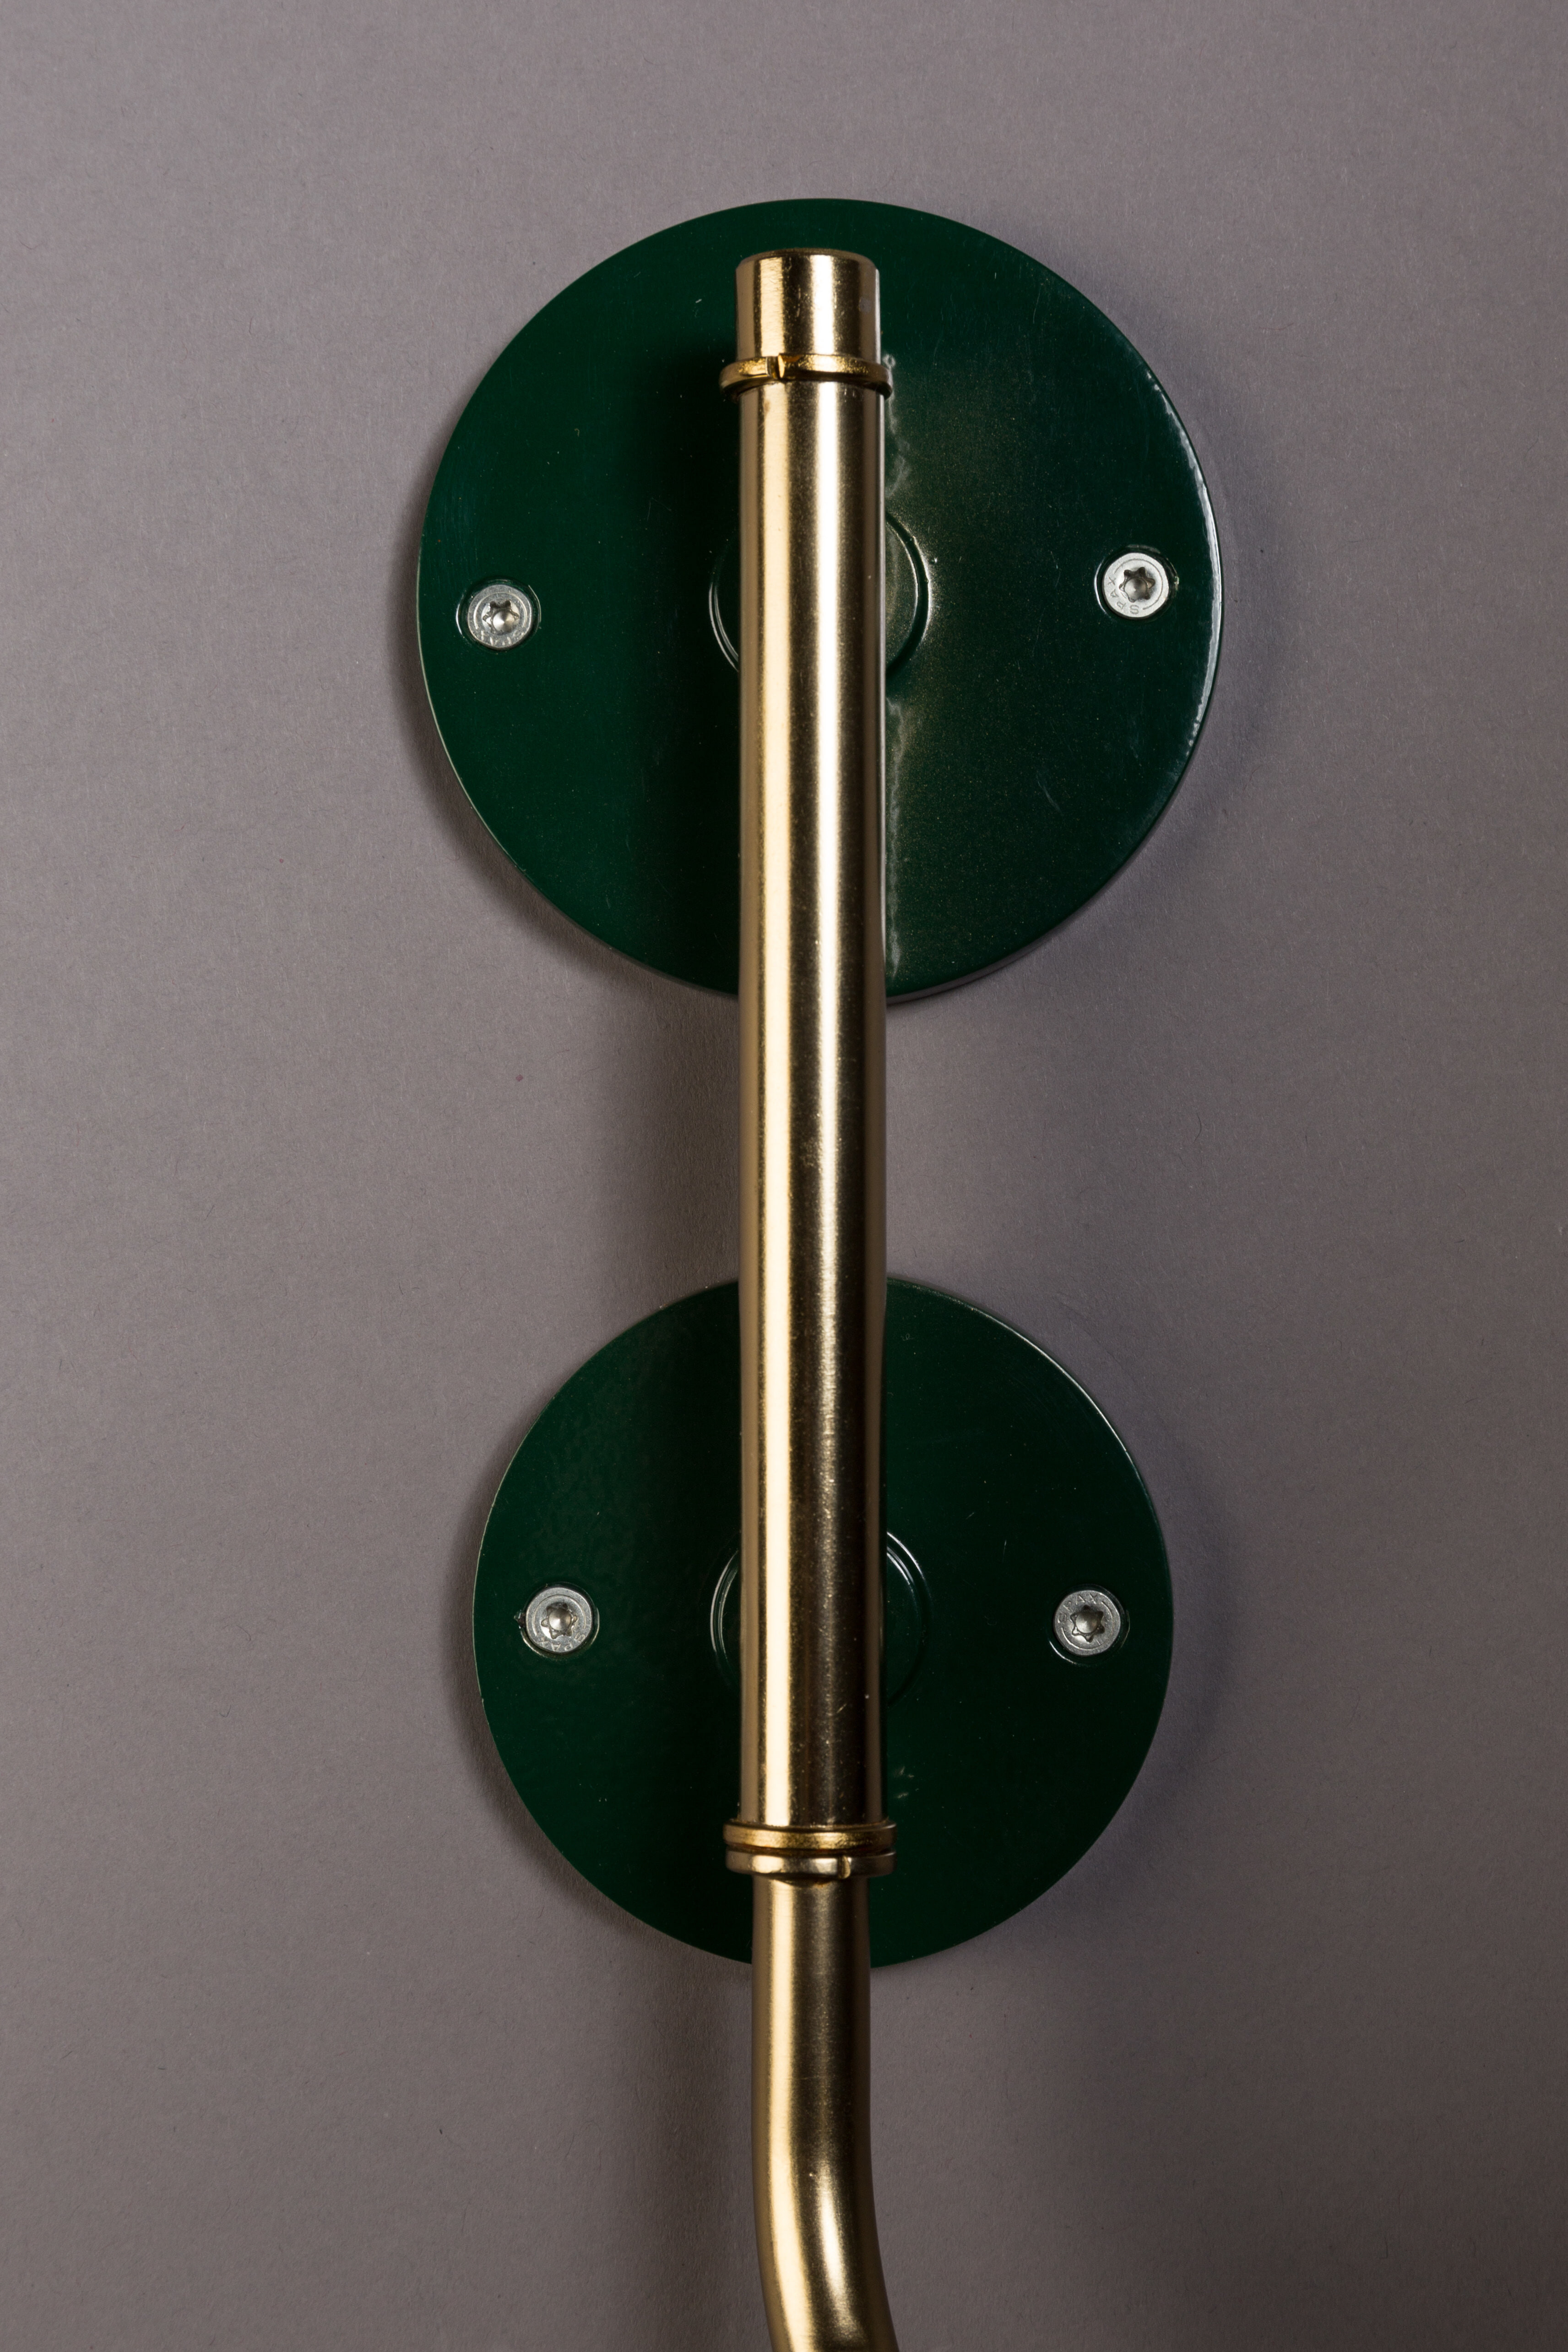 Dutchbone Wandlamp 'Devi' 49cm, kleur Groen